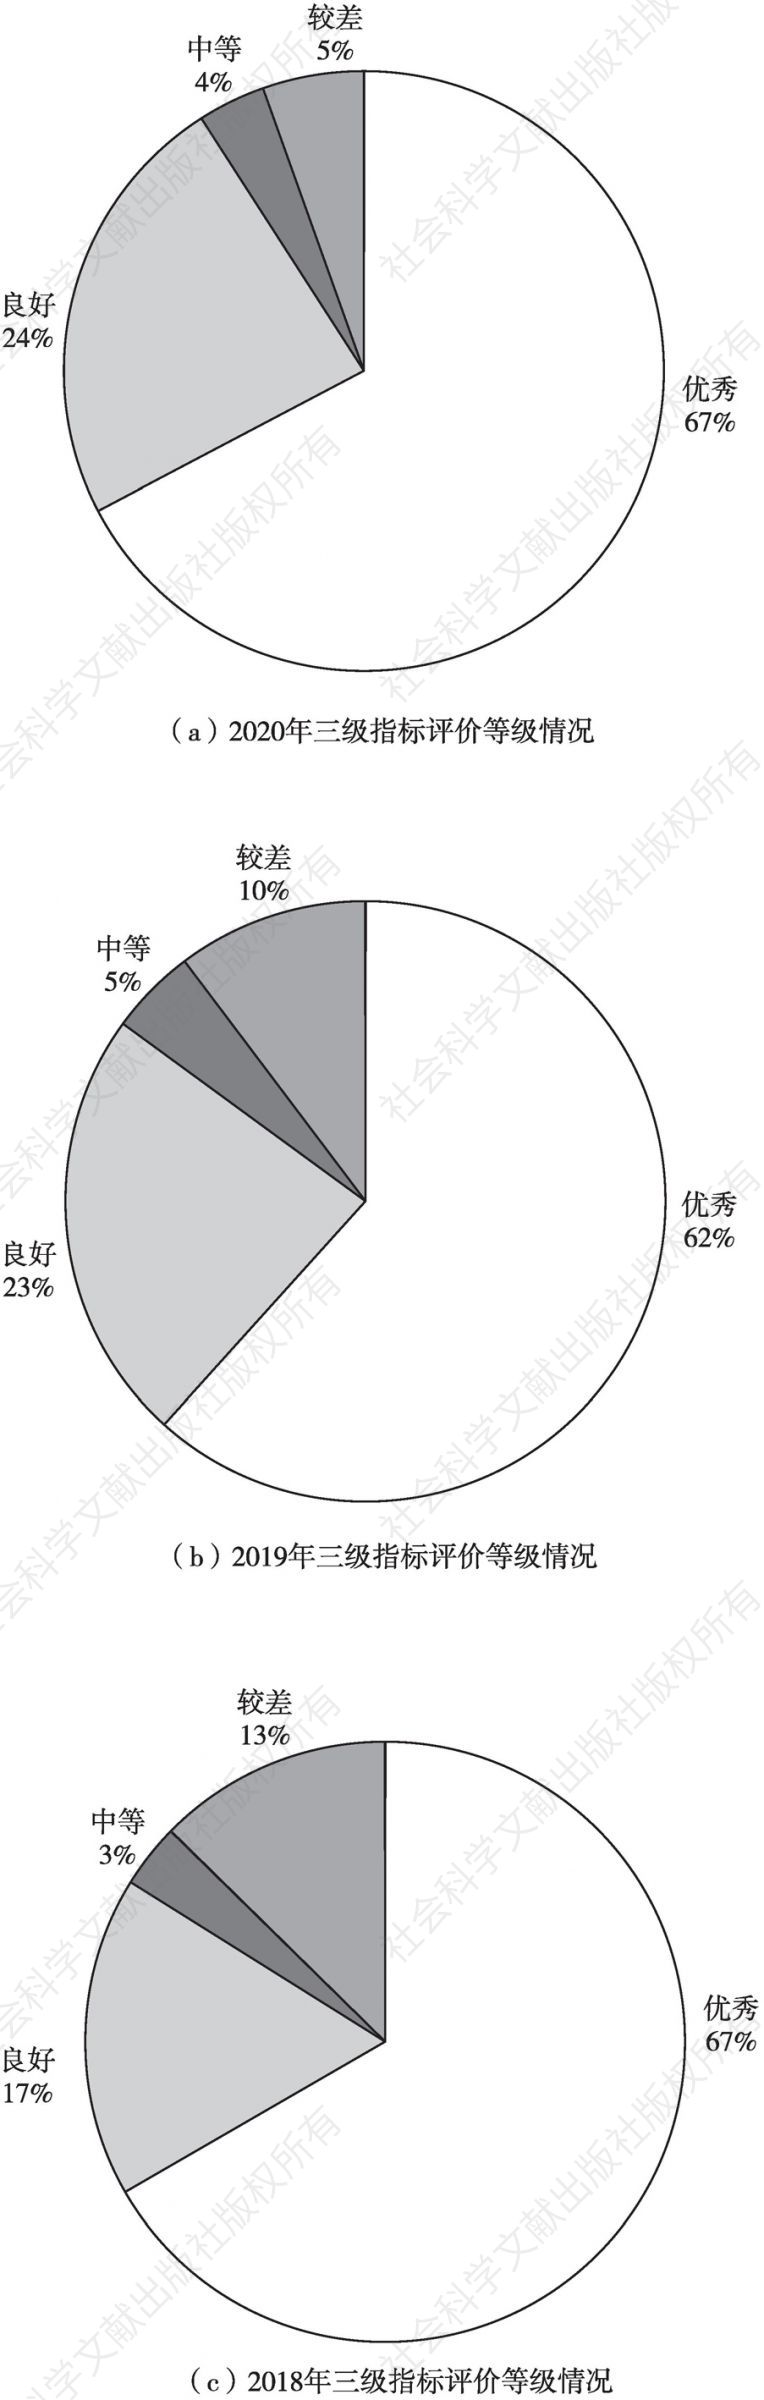 图4 平安北京建设发展评估三级指标评价等级情况（2018～2020年）